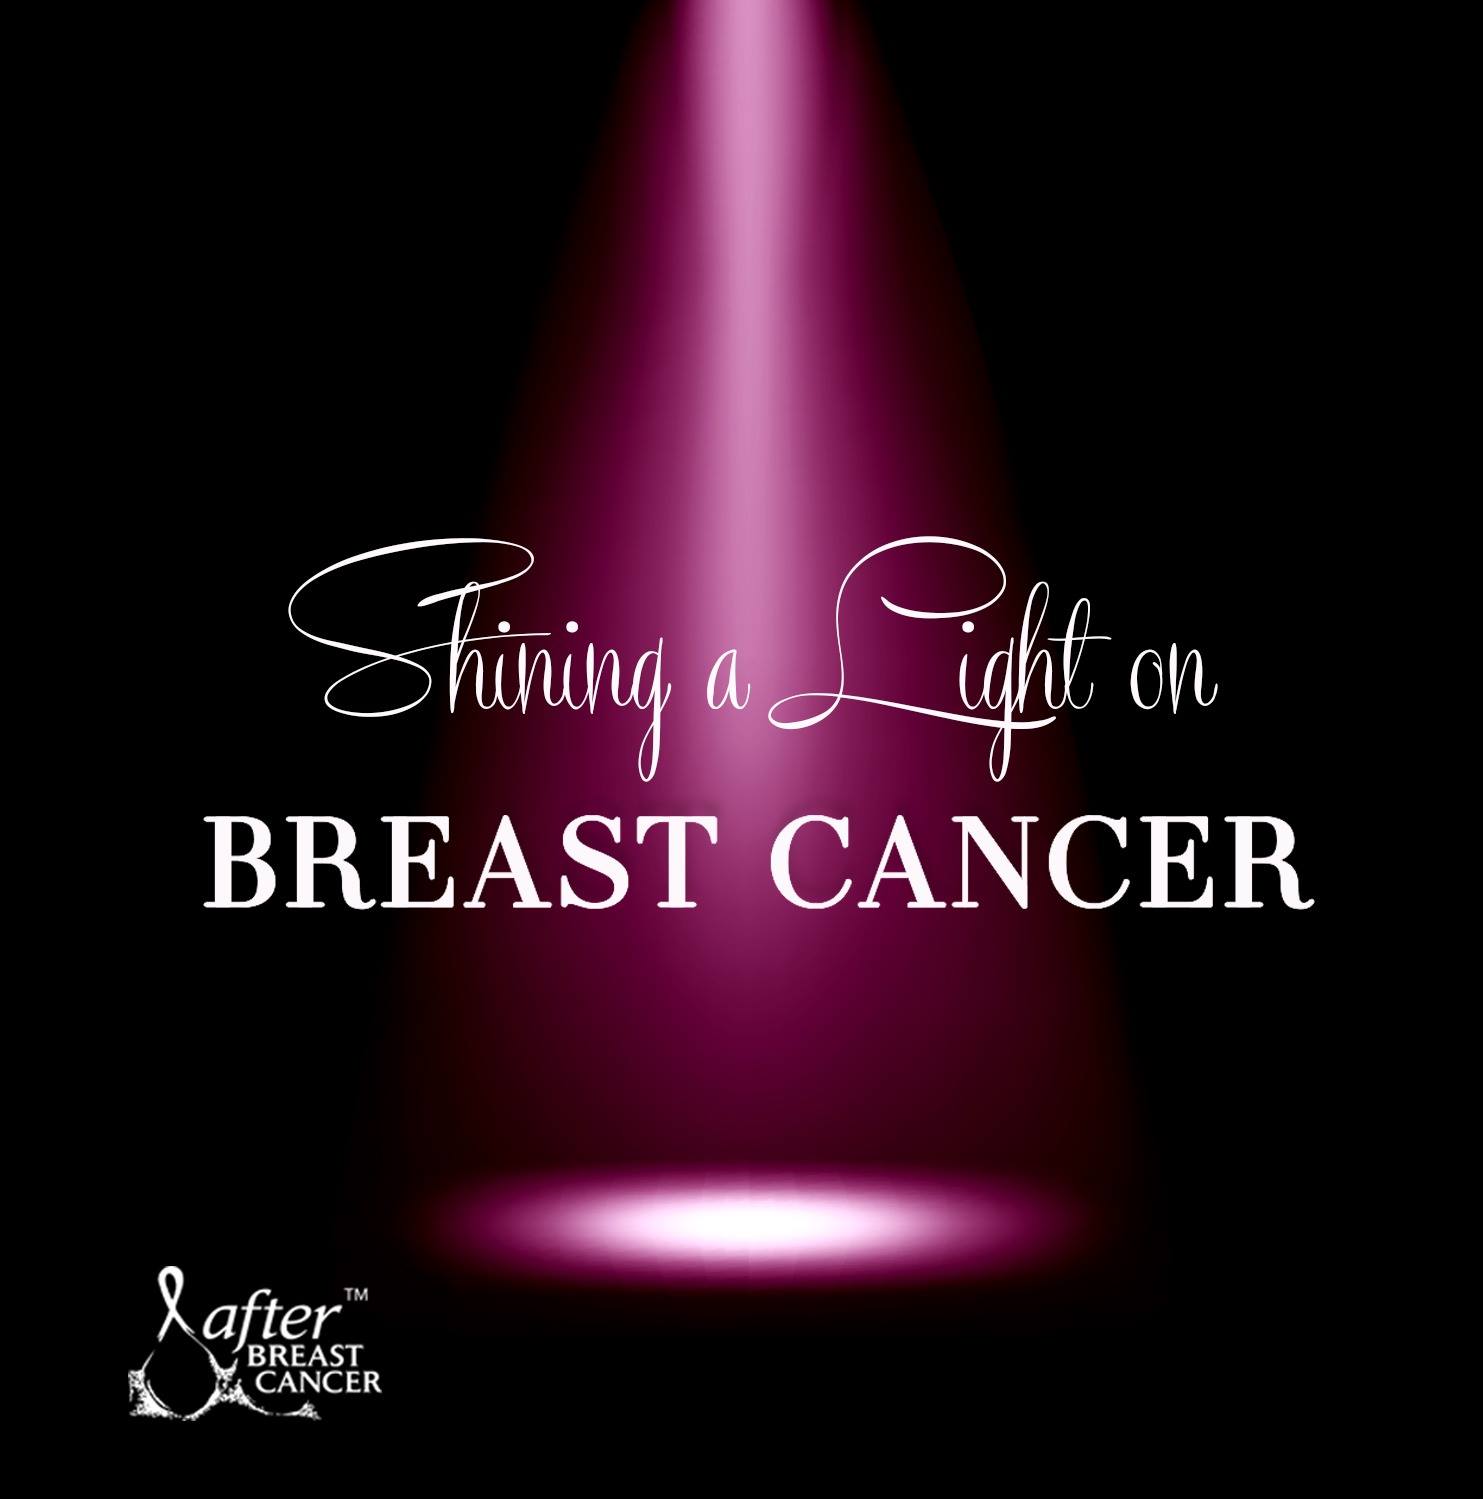 liter Døde i verden Accepteret Salex Helps to Shine A Light On Breast Cancer on October 15 - Salex